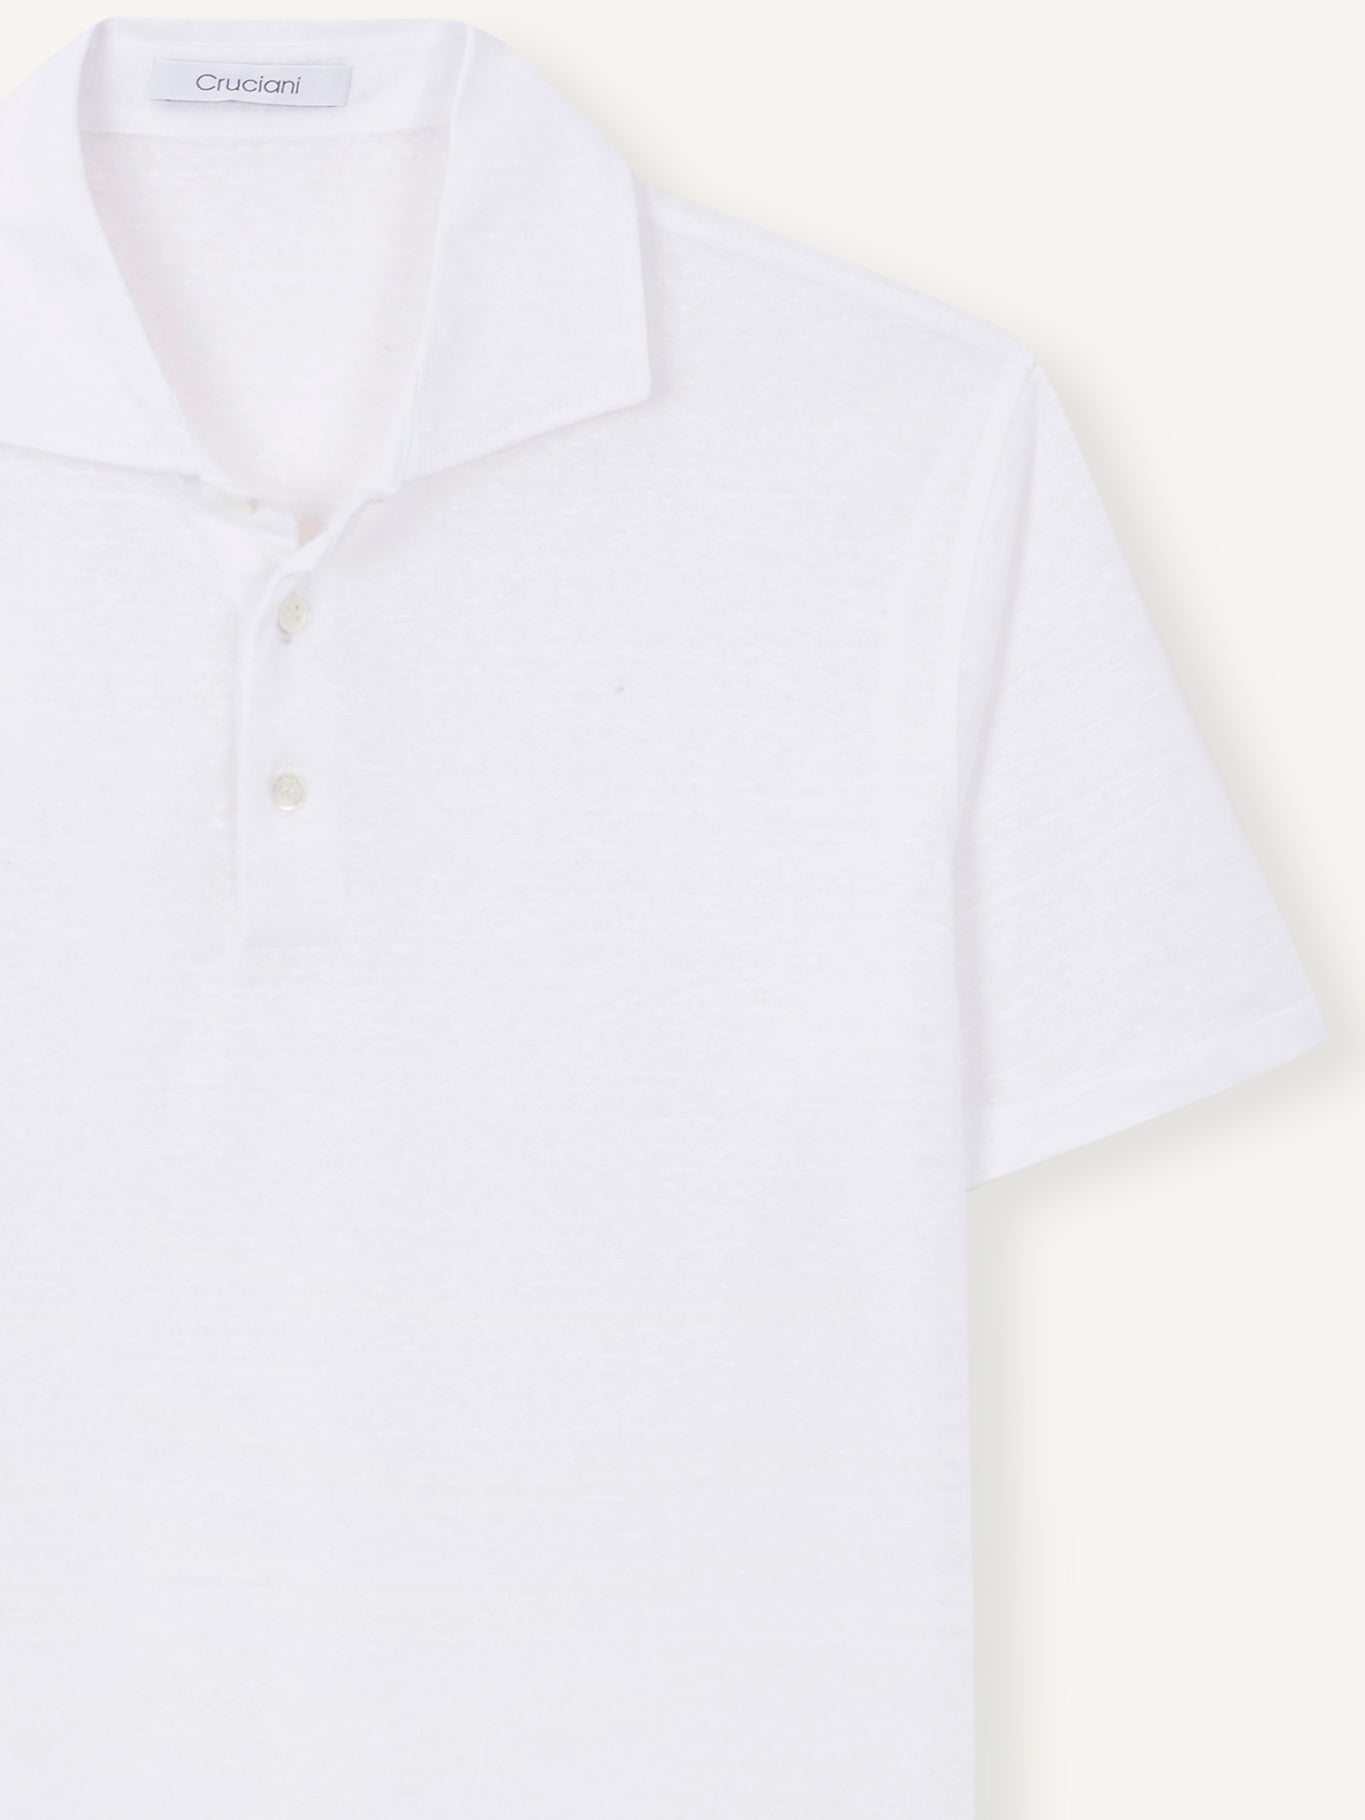 M/S linen polo shirt